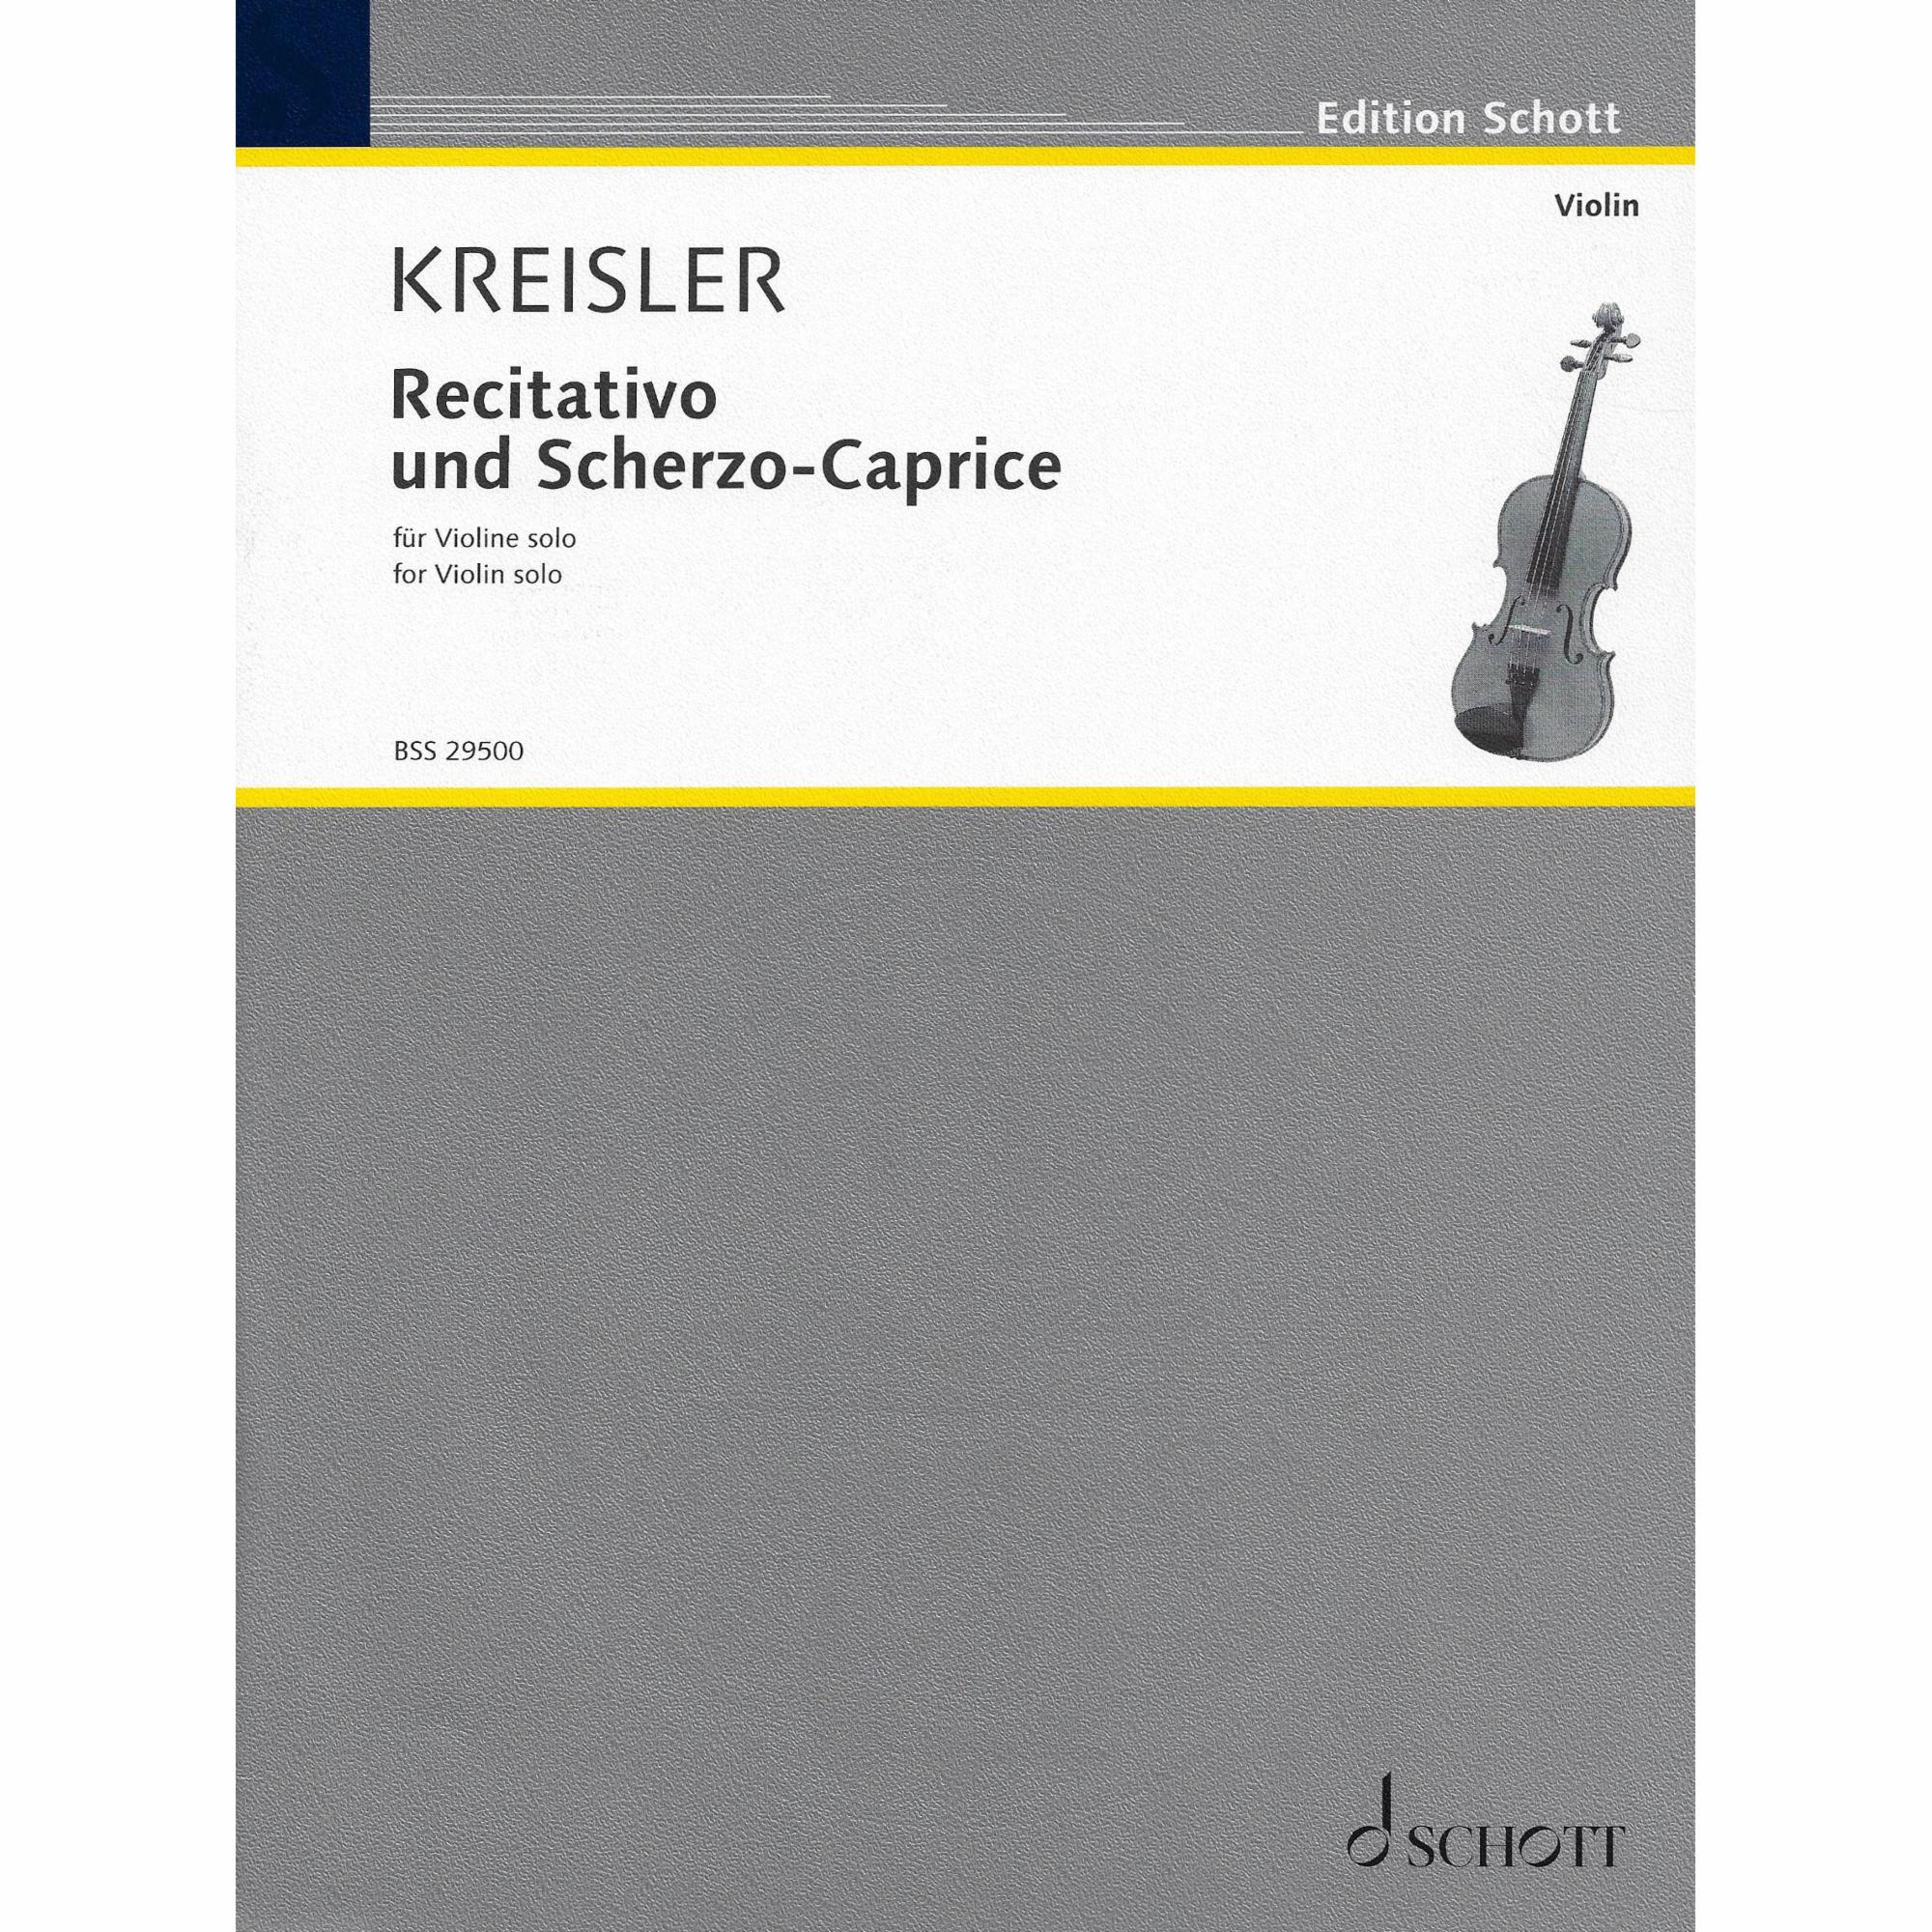 Kreisler -- Recitativo & Scherzo-Caprice, Op. 6 for Solo Violin